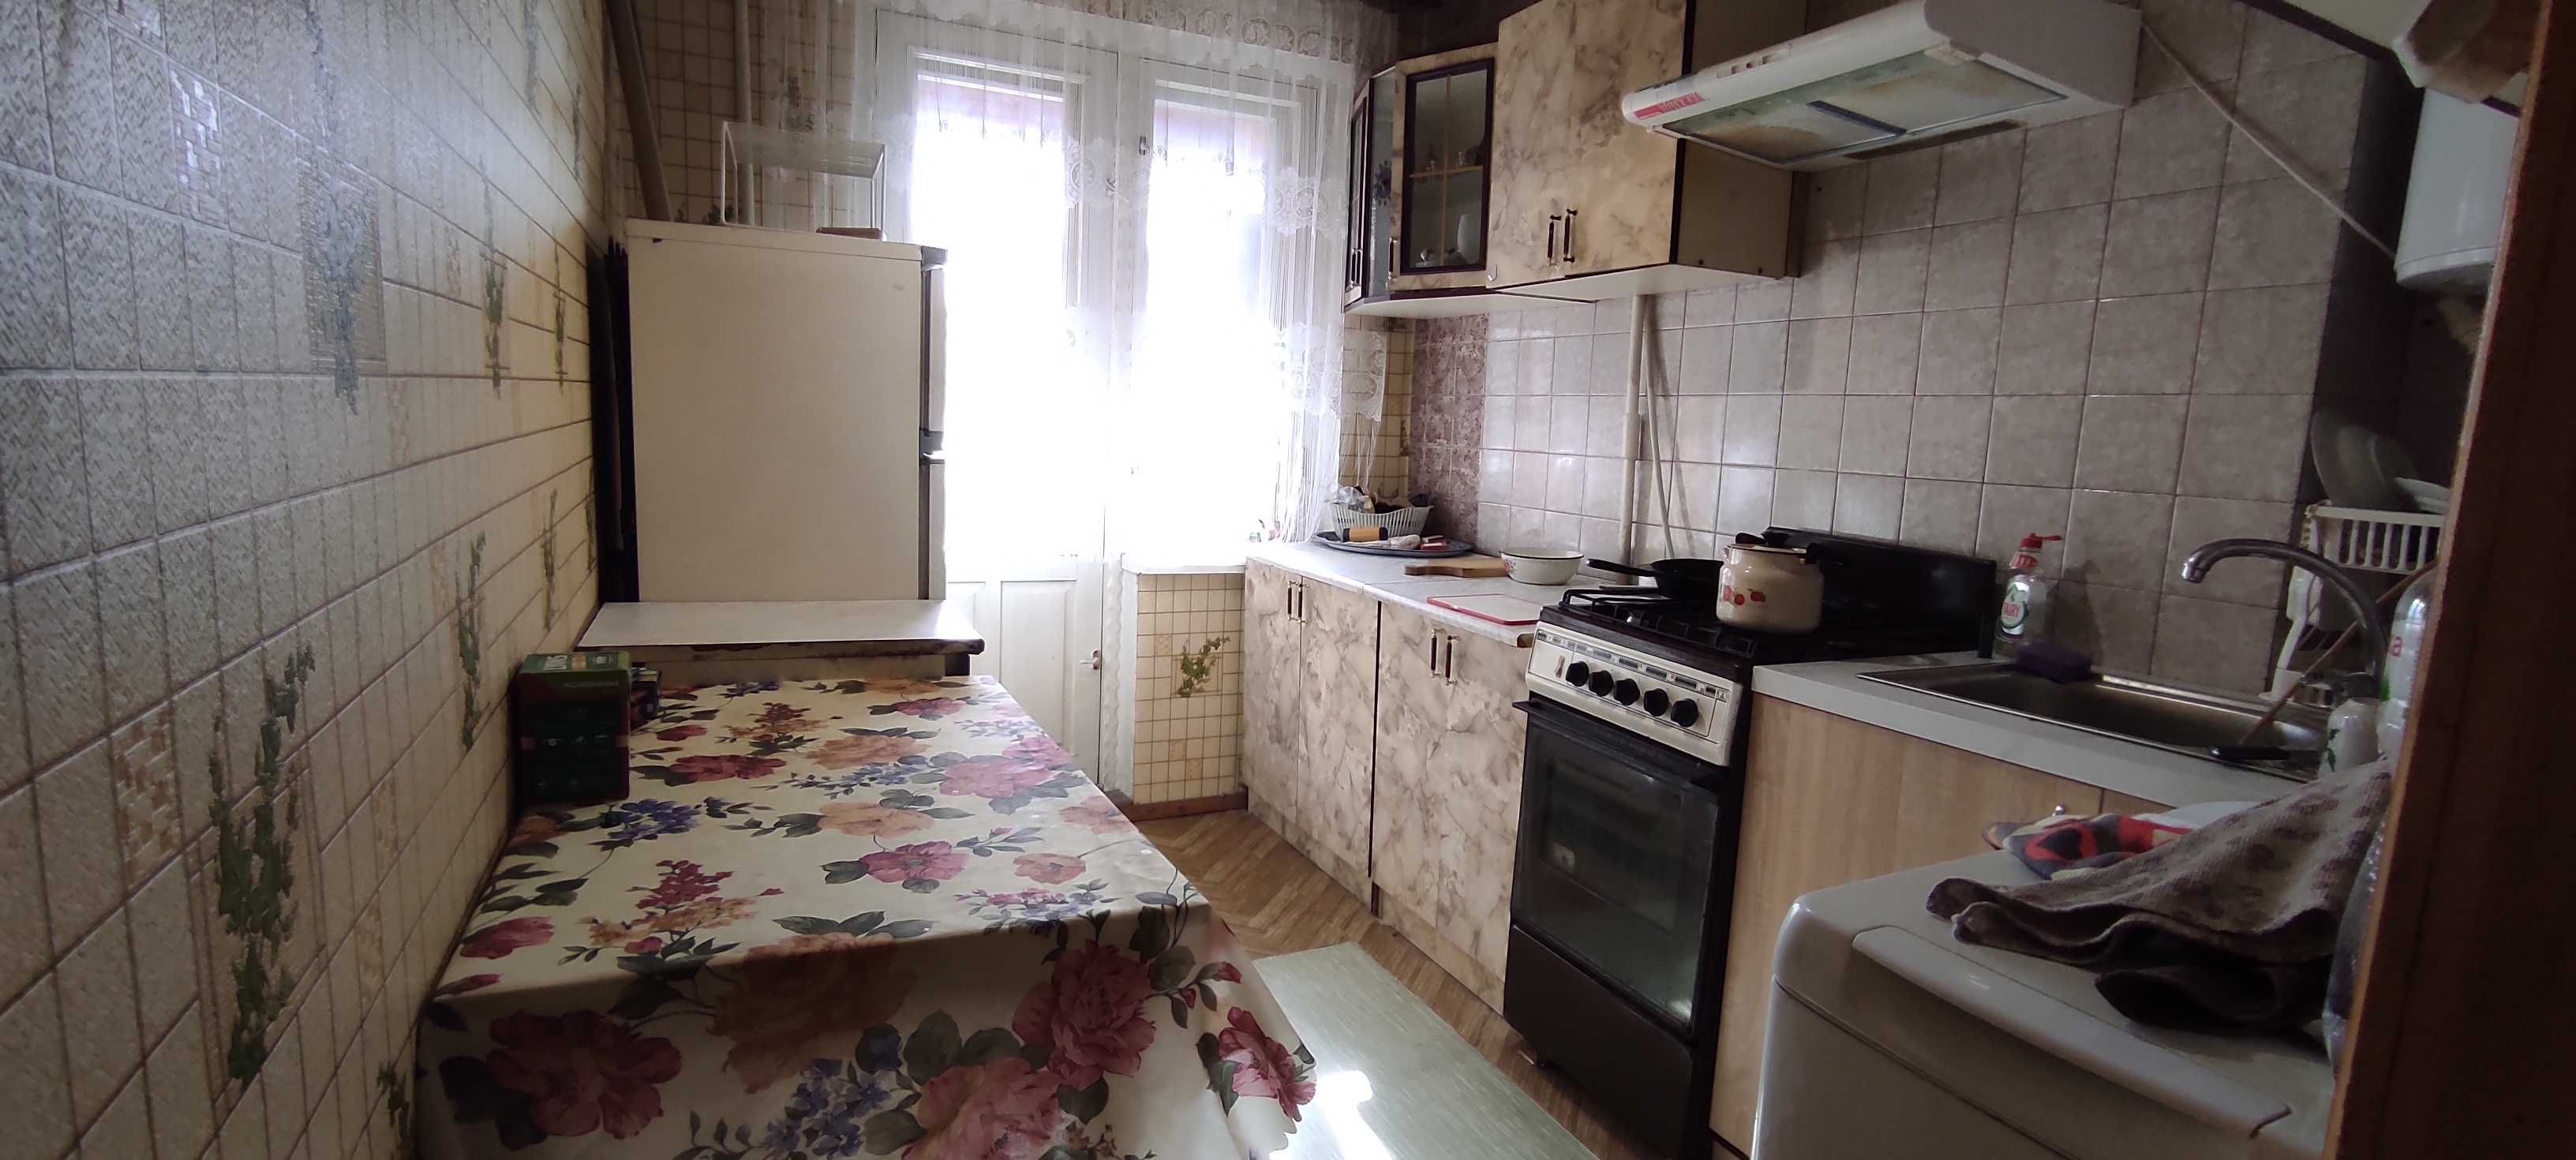 Продам 2-х комнатную квартиру с гаражем пр-кт Слобожанский